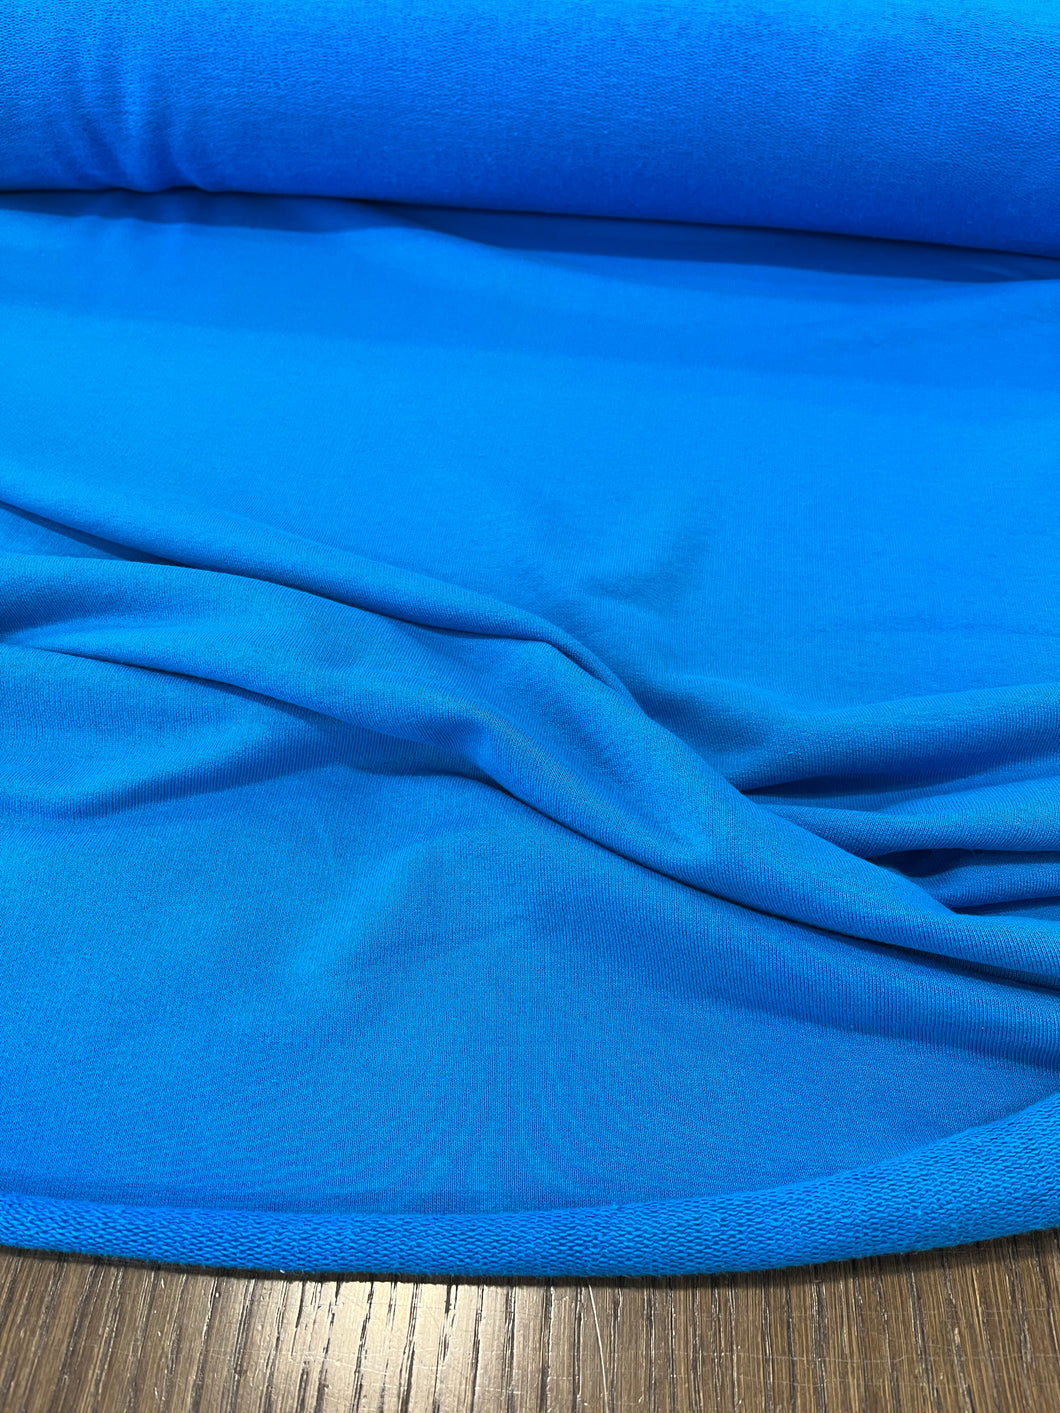 Felpa di cotone blu: 15€/m